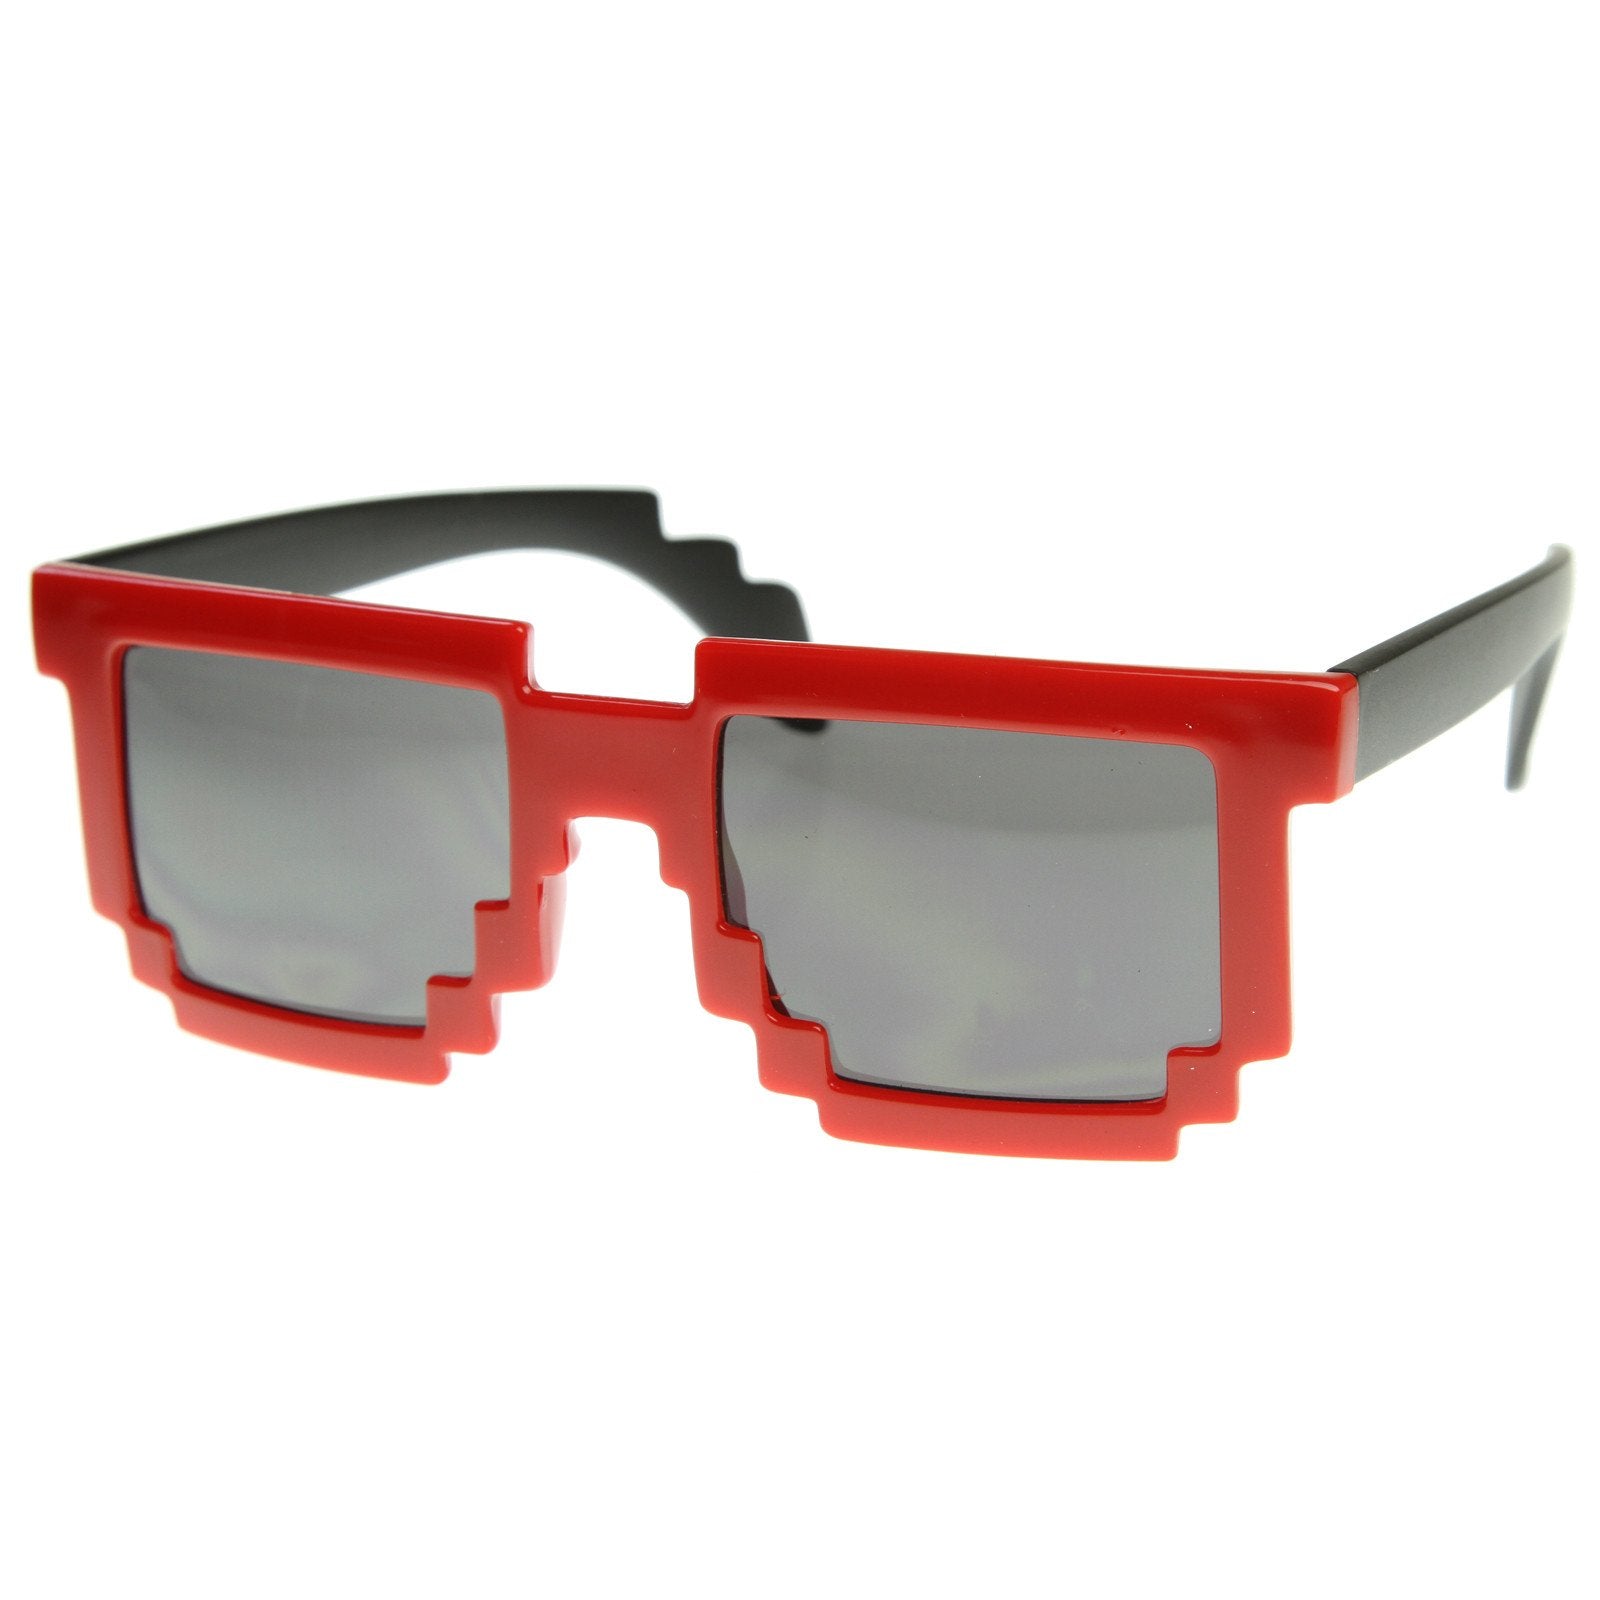 Super Fun Retro Pixelate 8 Bit Geek Sunglasses Zerouv